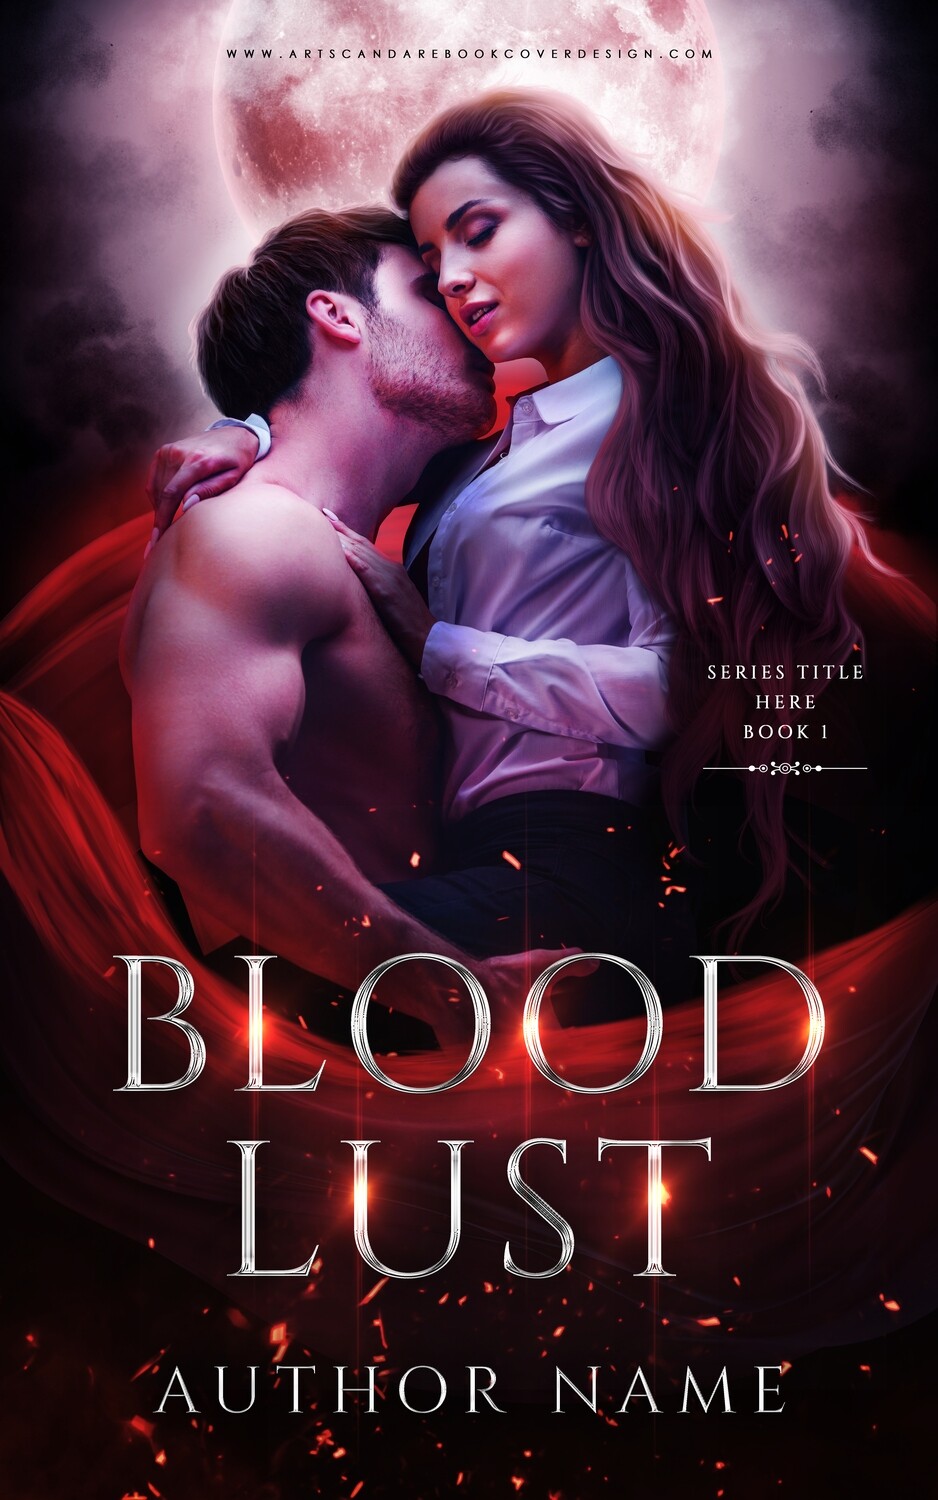 Ebook: Blood Lust